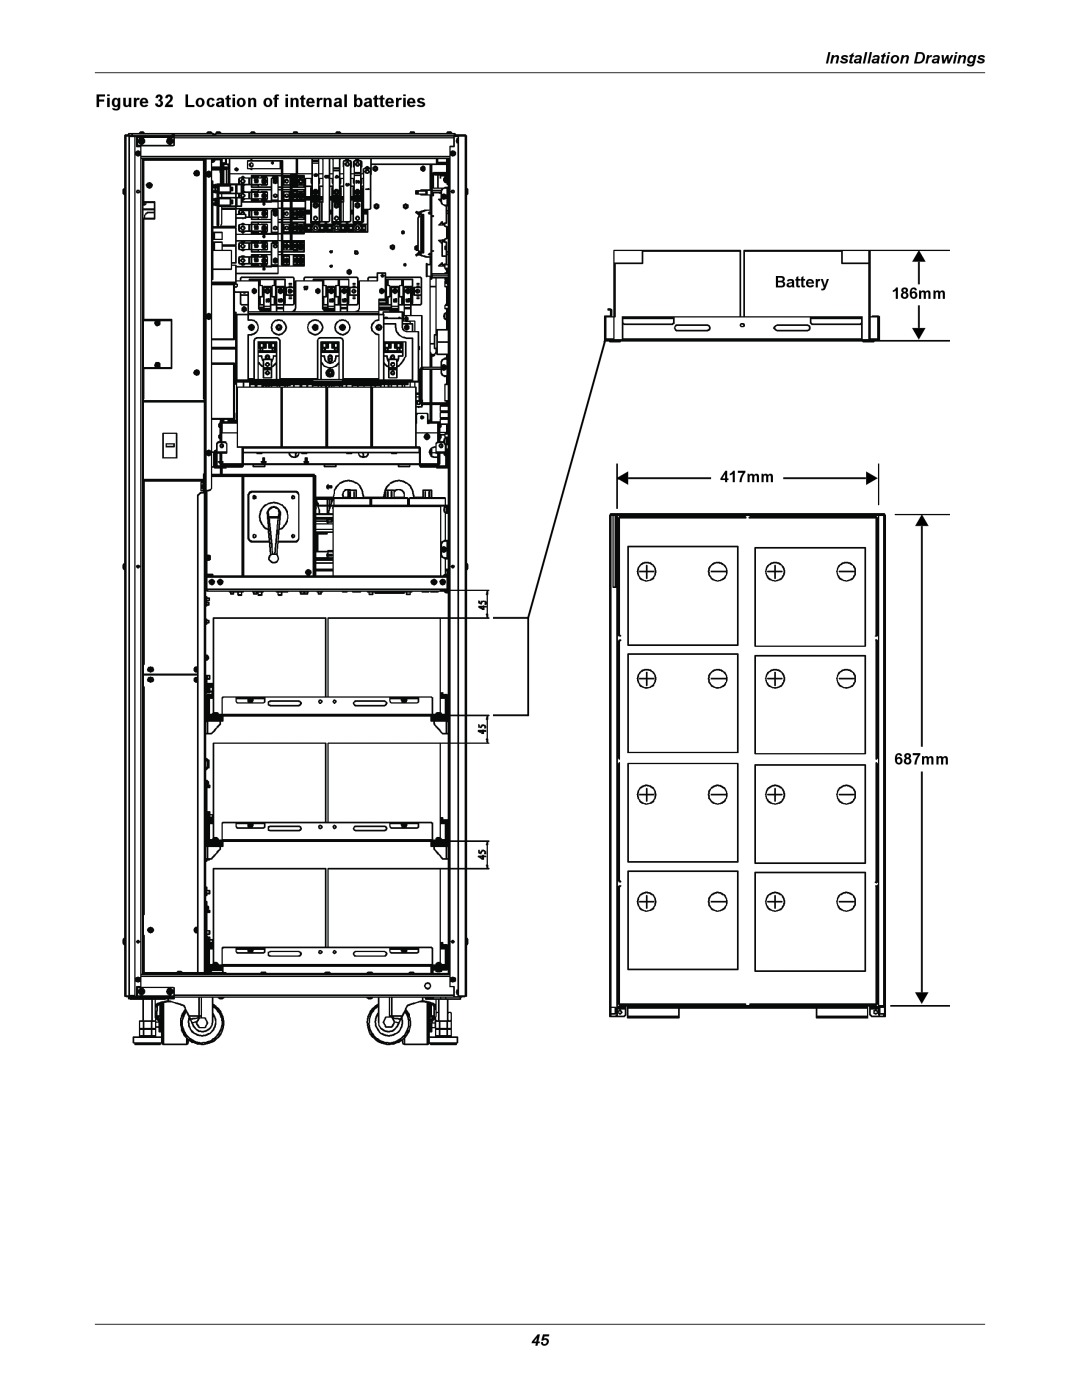 Emerson 208V, 10-30kVA installation manual Location of internal batteries, Installation Drawings 